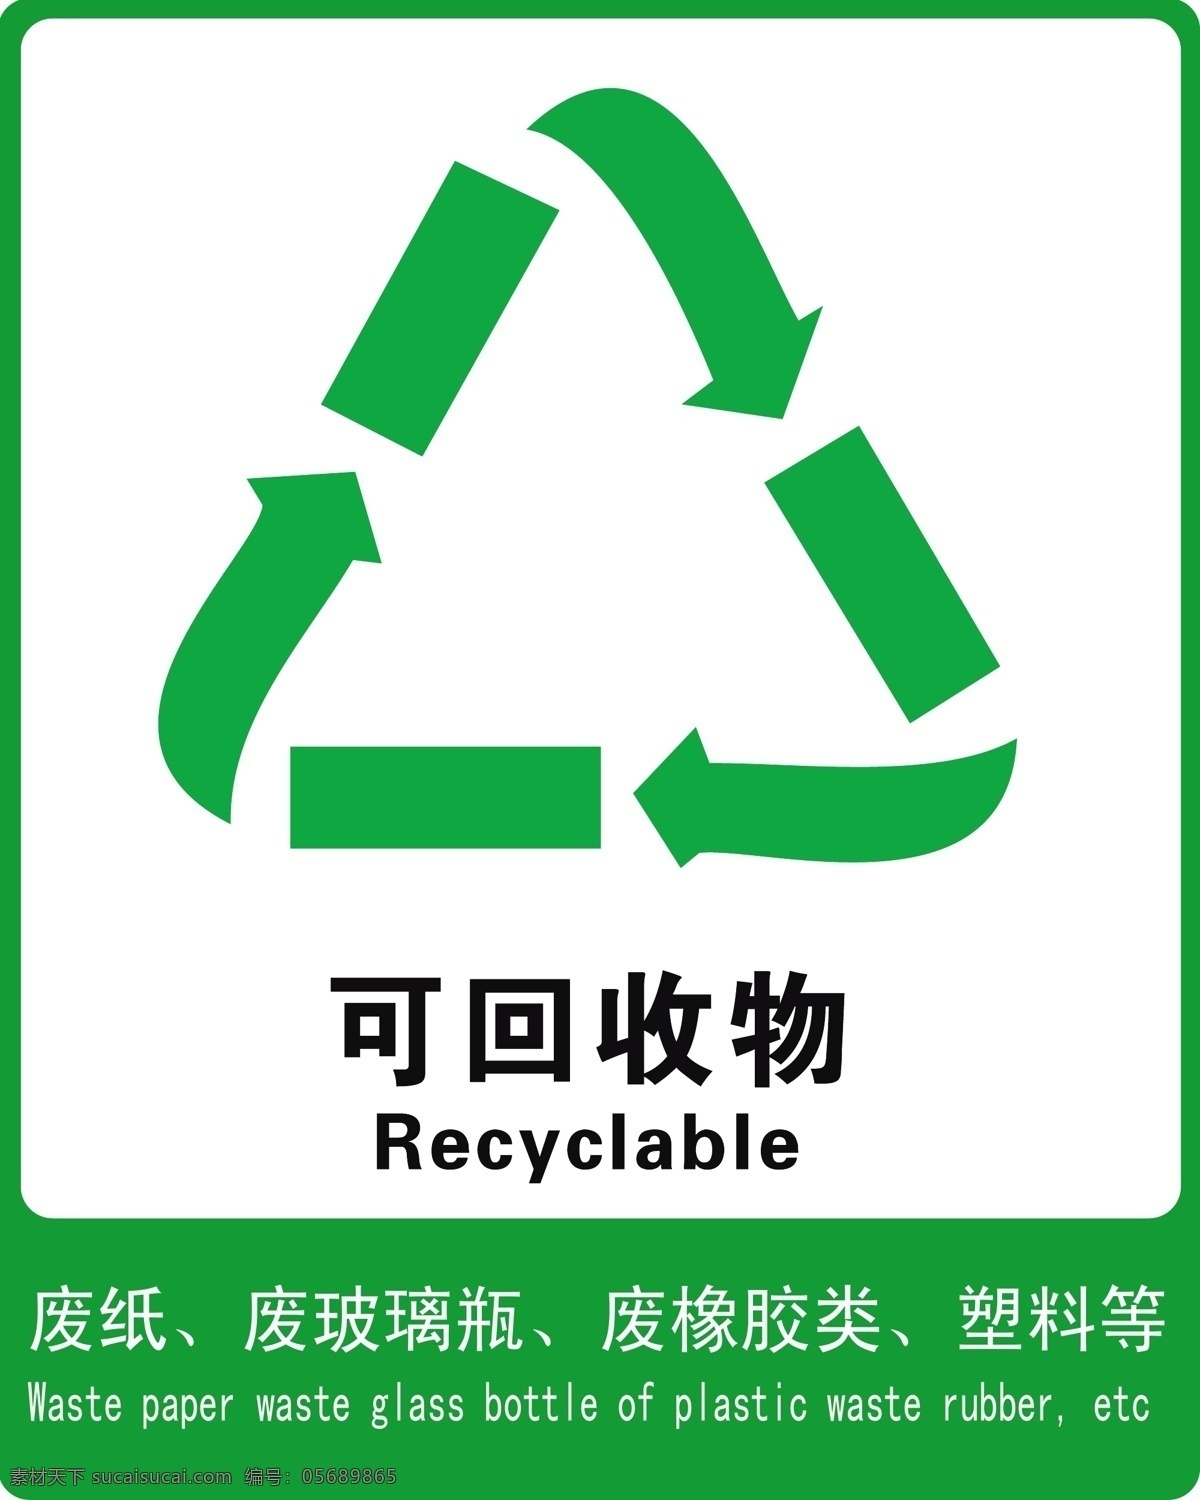 回收 不可 物 可回收 不可回收 垃圾桶 环保 循环 再利用 标志图标 公共标识标志